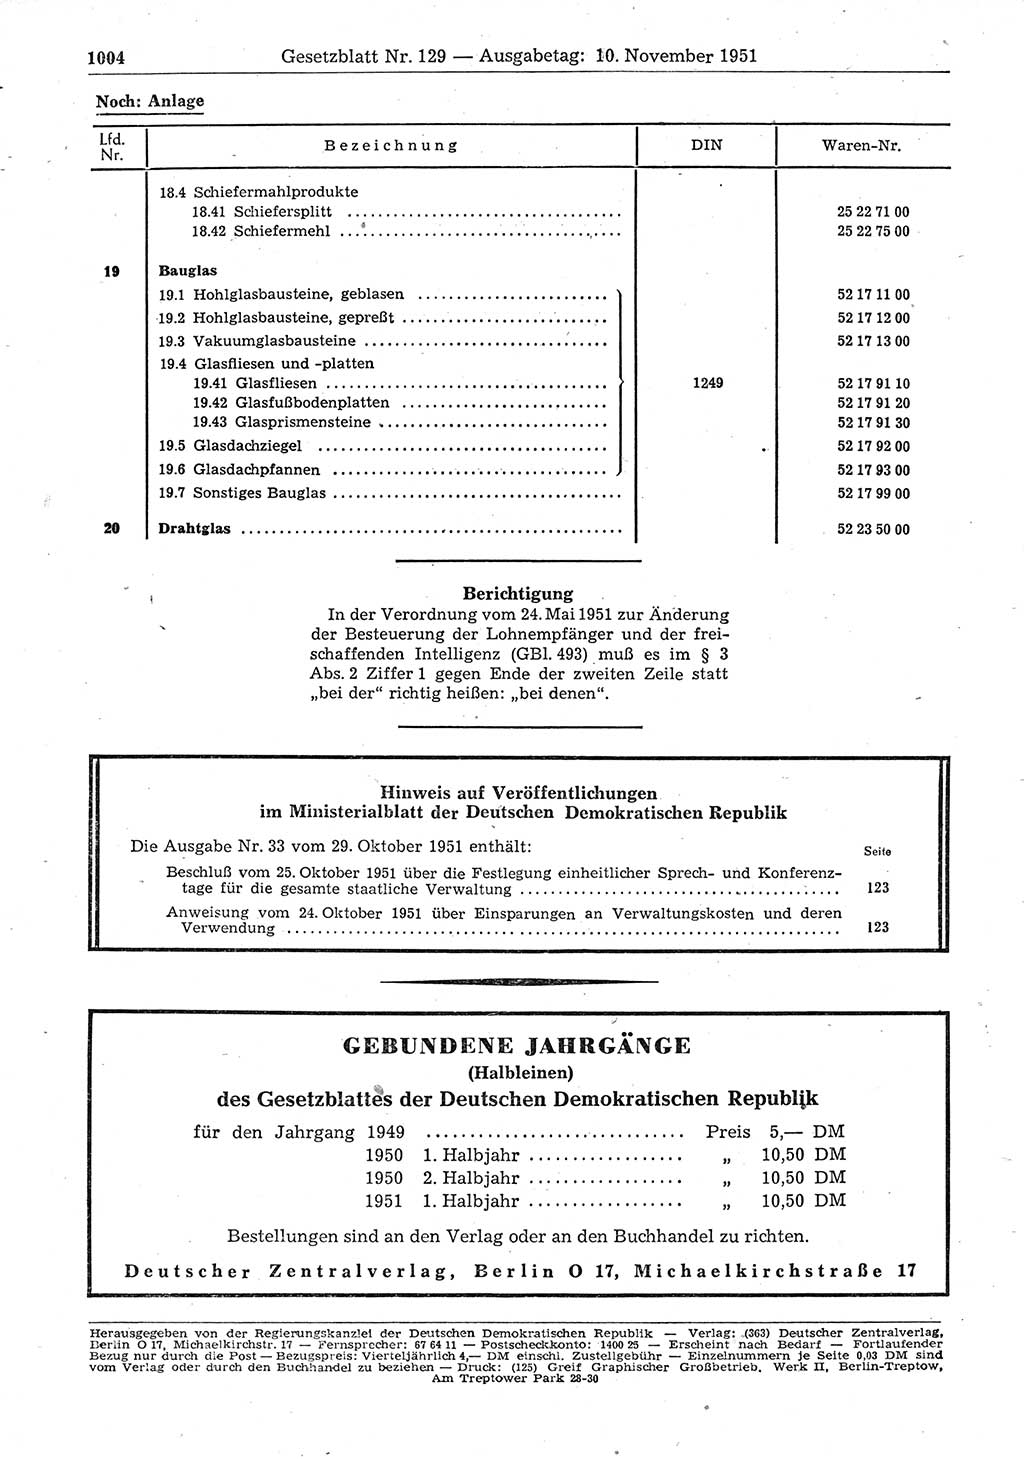 Gesetzblatt (GBl.) der Deutschen Demokratischen Republik (DDR) 1951, Seite 1004 (GBl. DDR 1951, S. 1004)